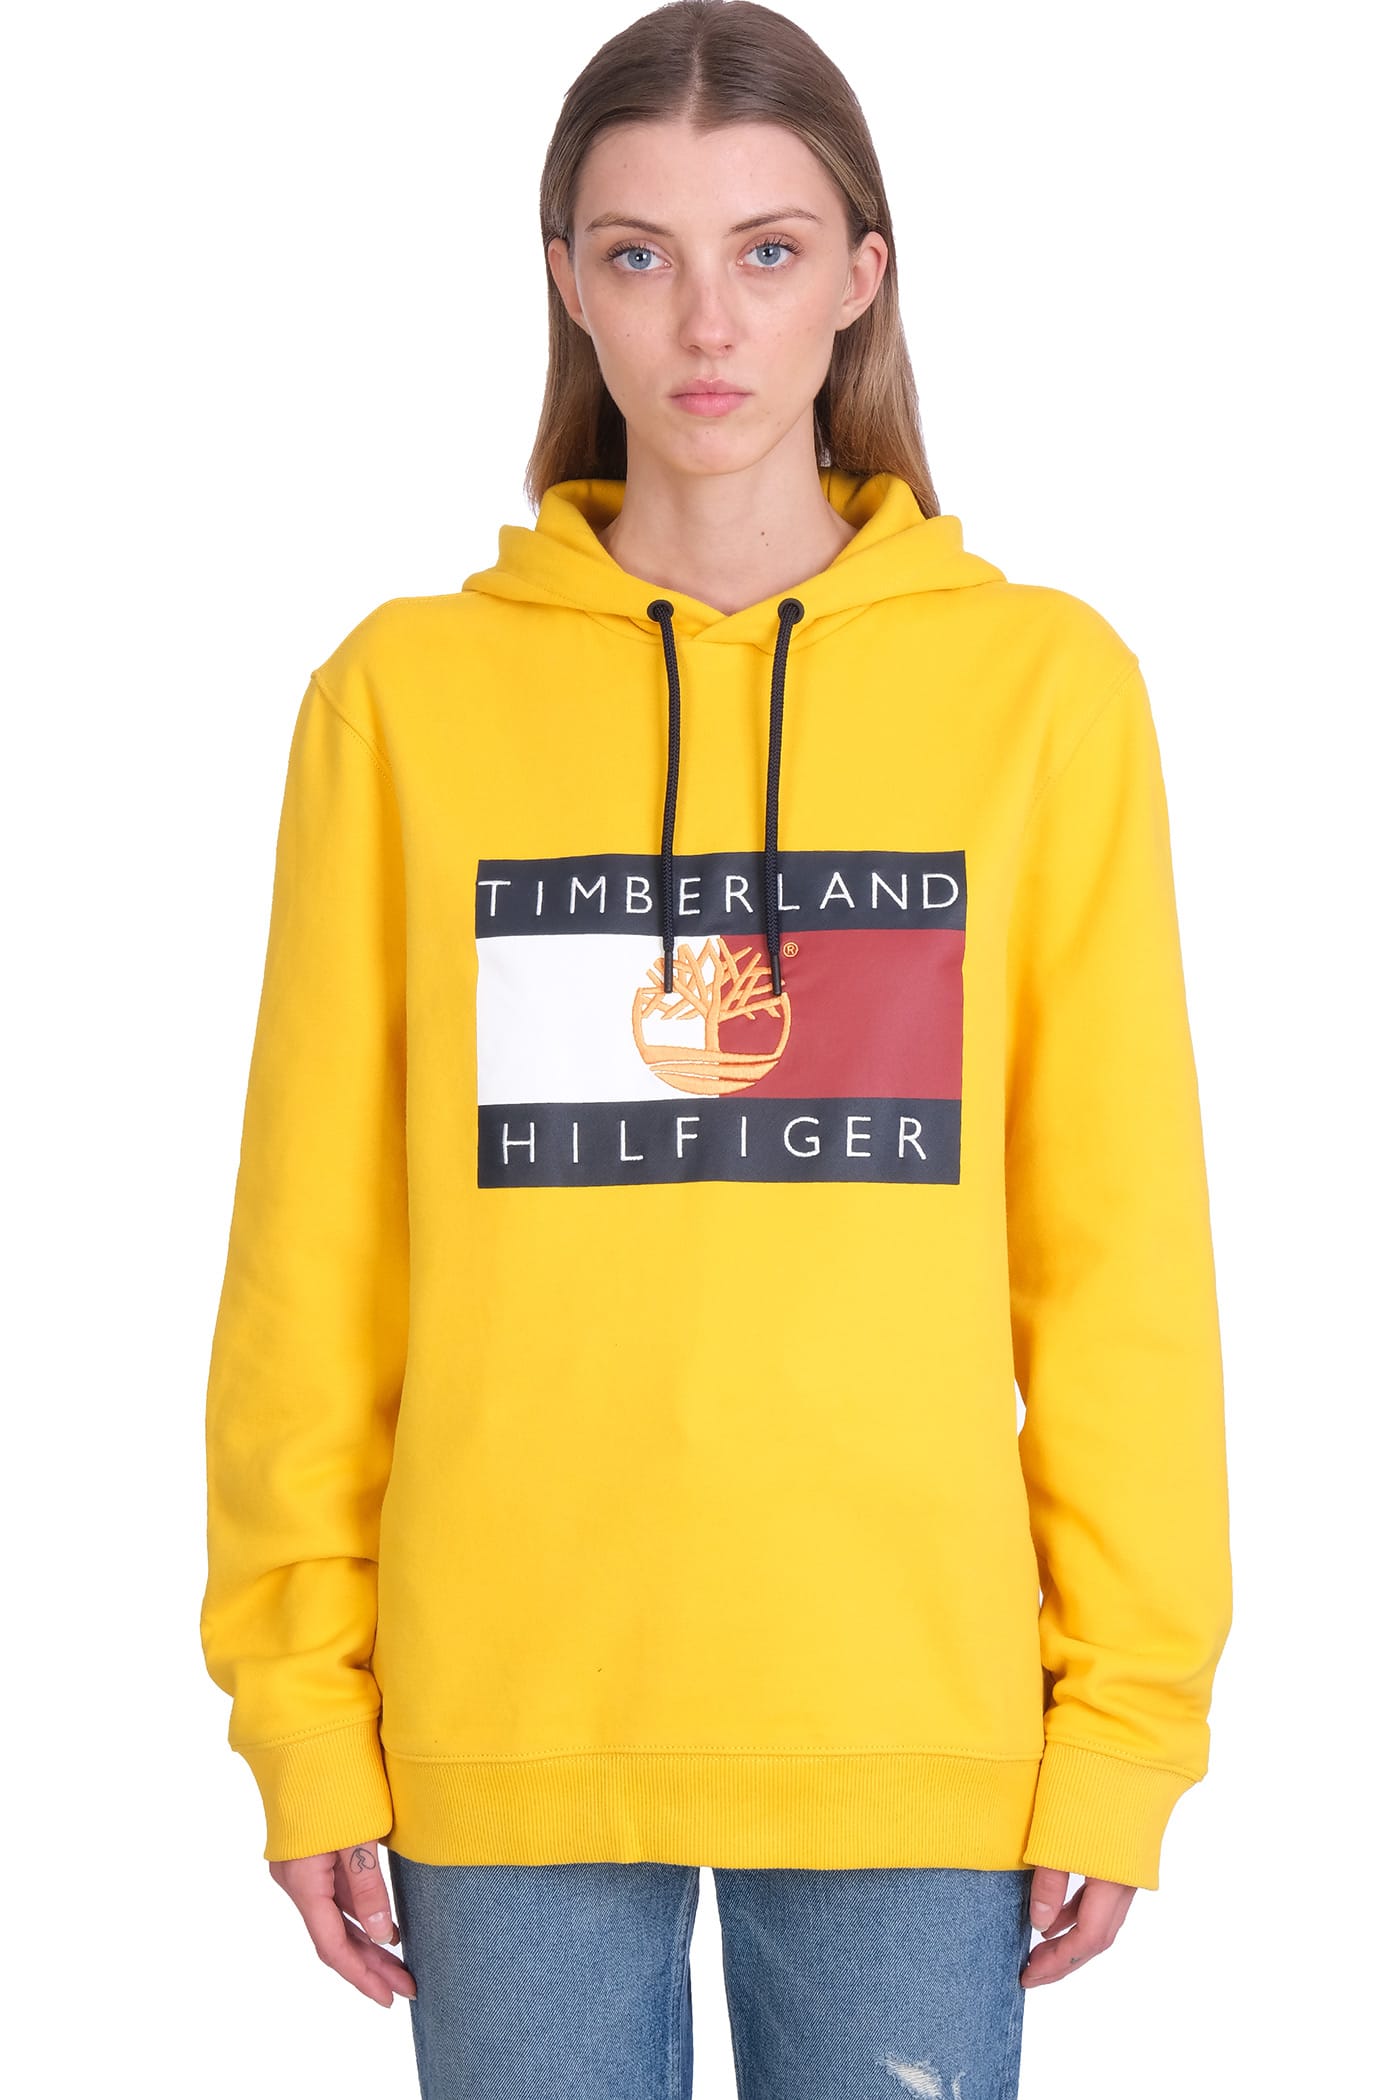 Timberland Sweatshirt In Yellow Cotton